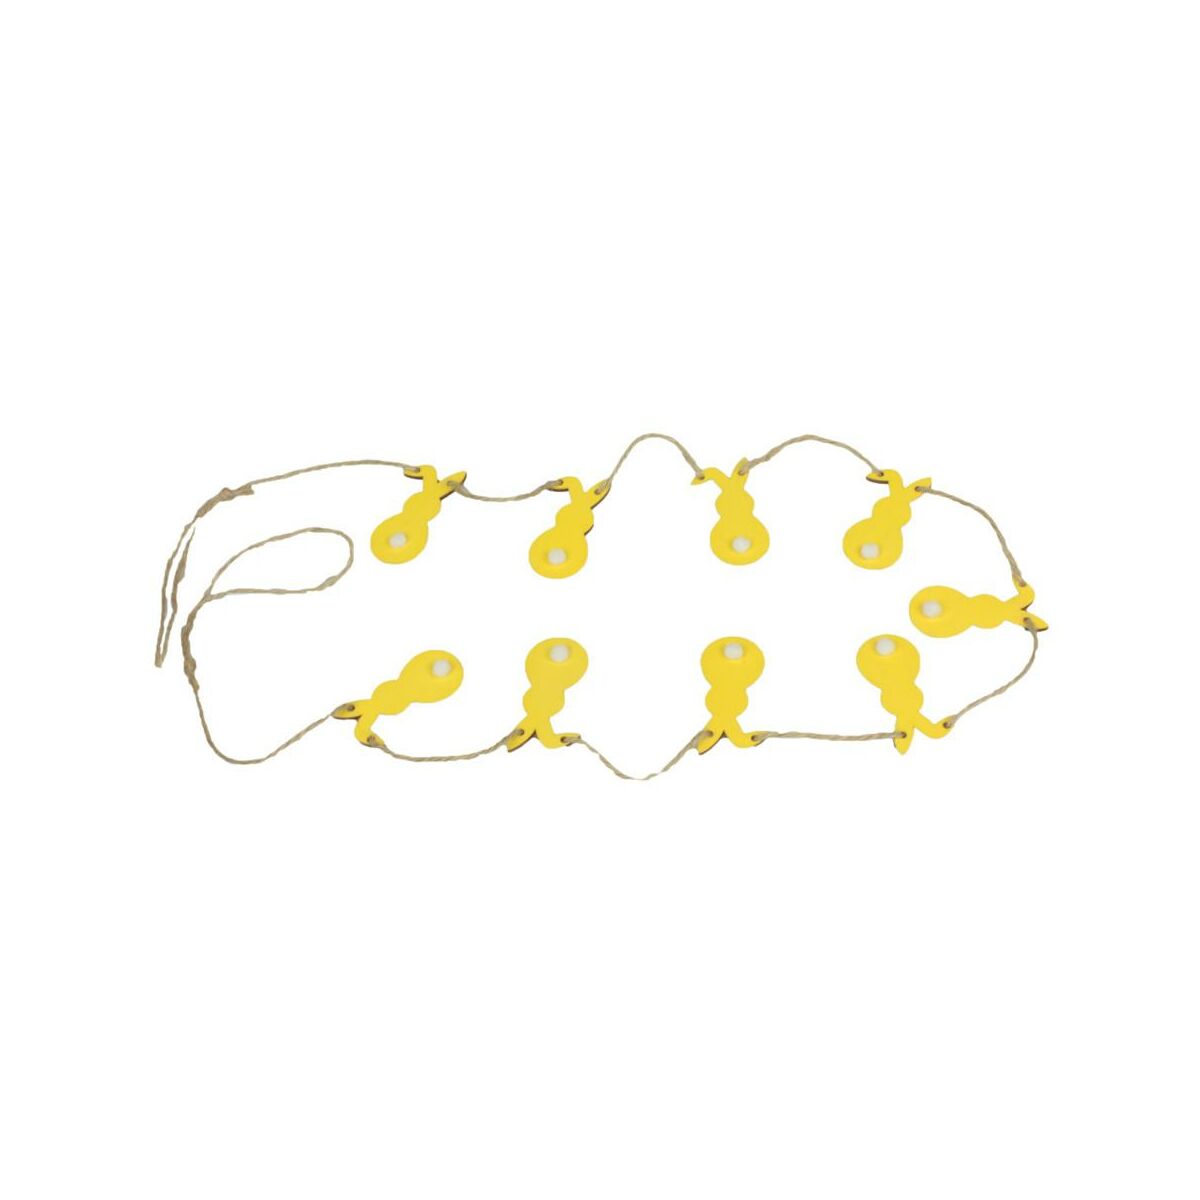 Łańcuch wielkanocny Zajączki 100 cm żółty